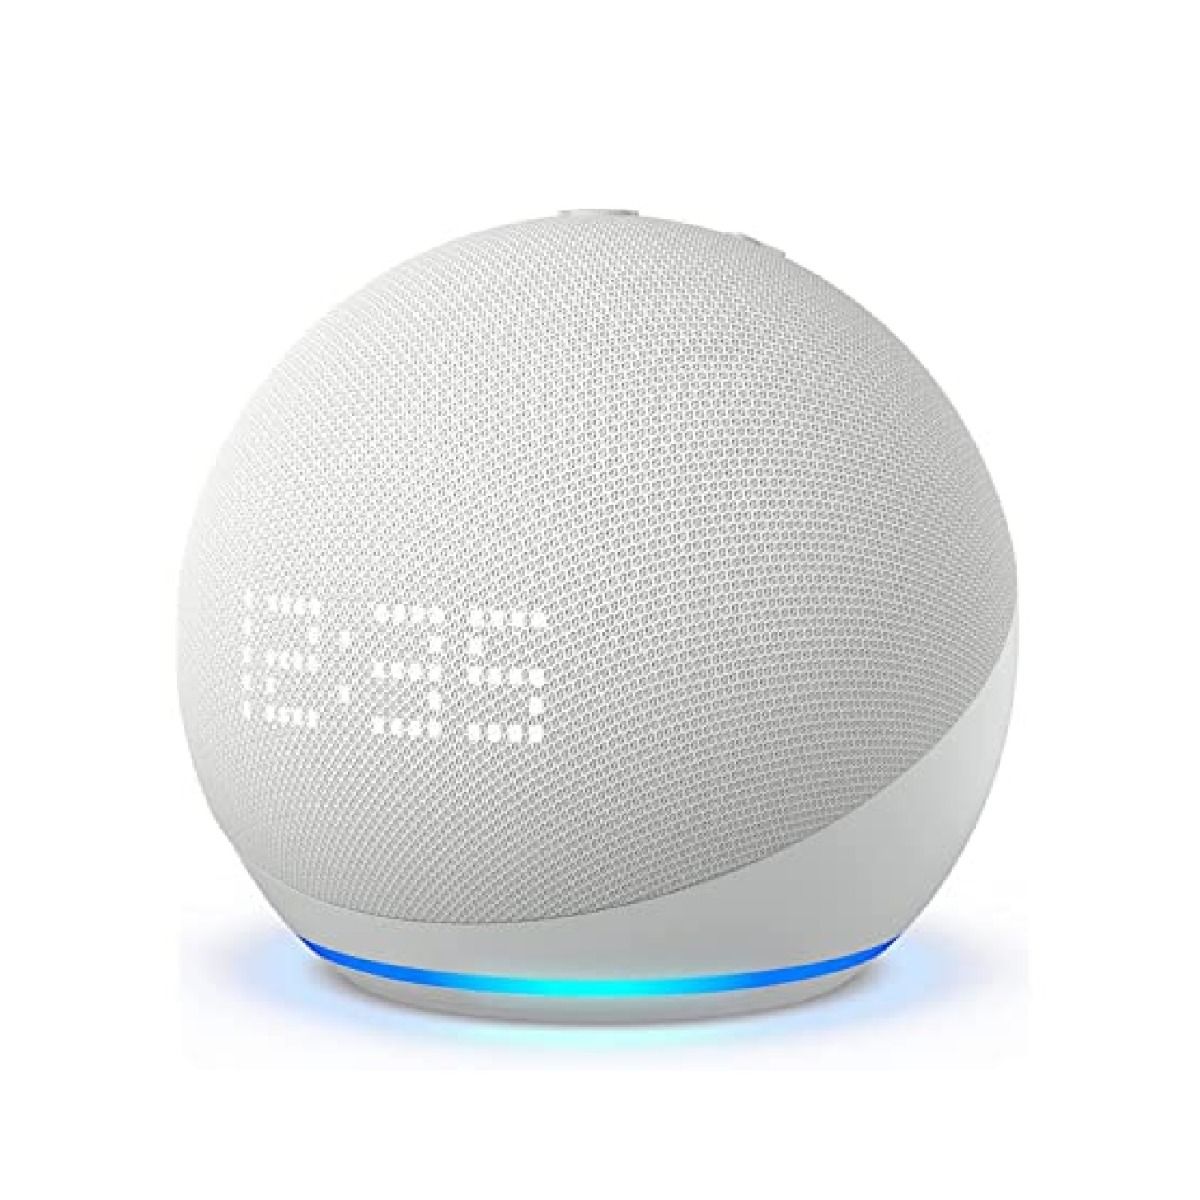  Echo (4ta Generación), Con sonido de alta calidad, hub de  smart home y Alexa